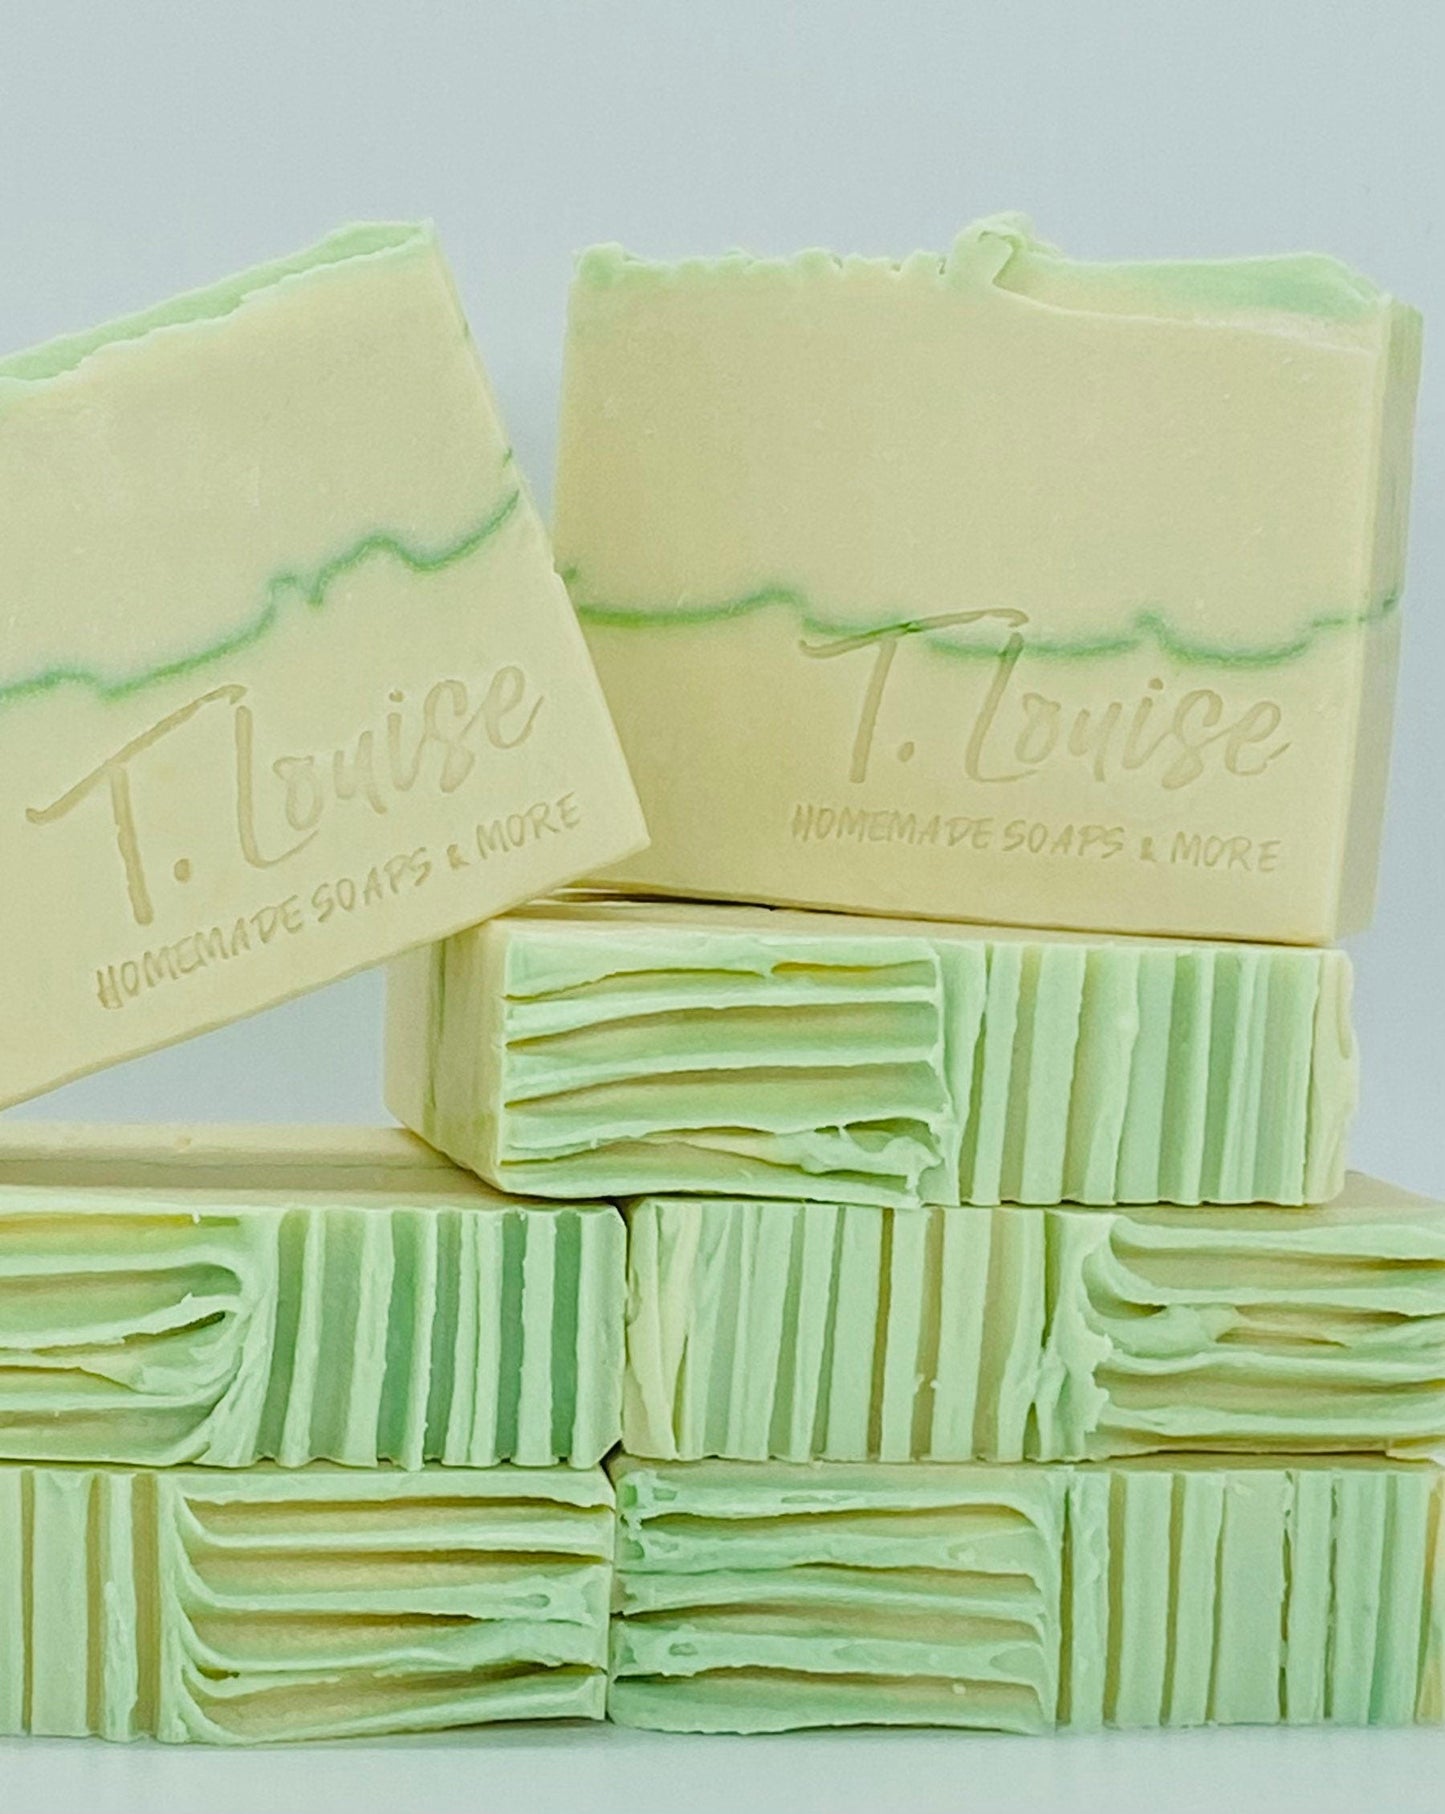 White Lily & Aloe handmade soap